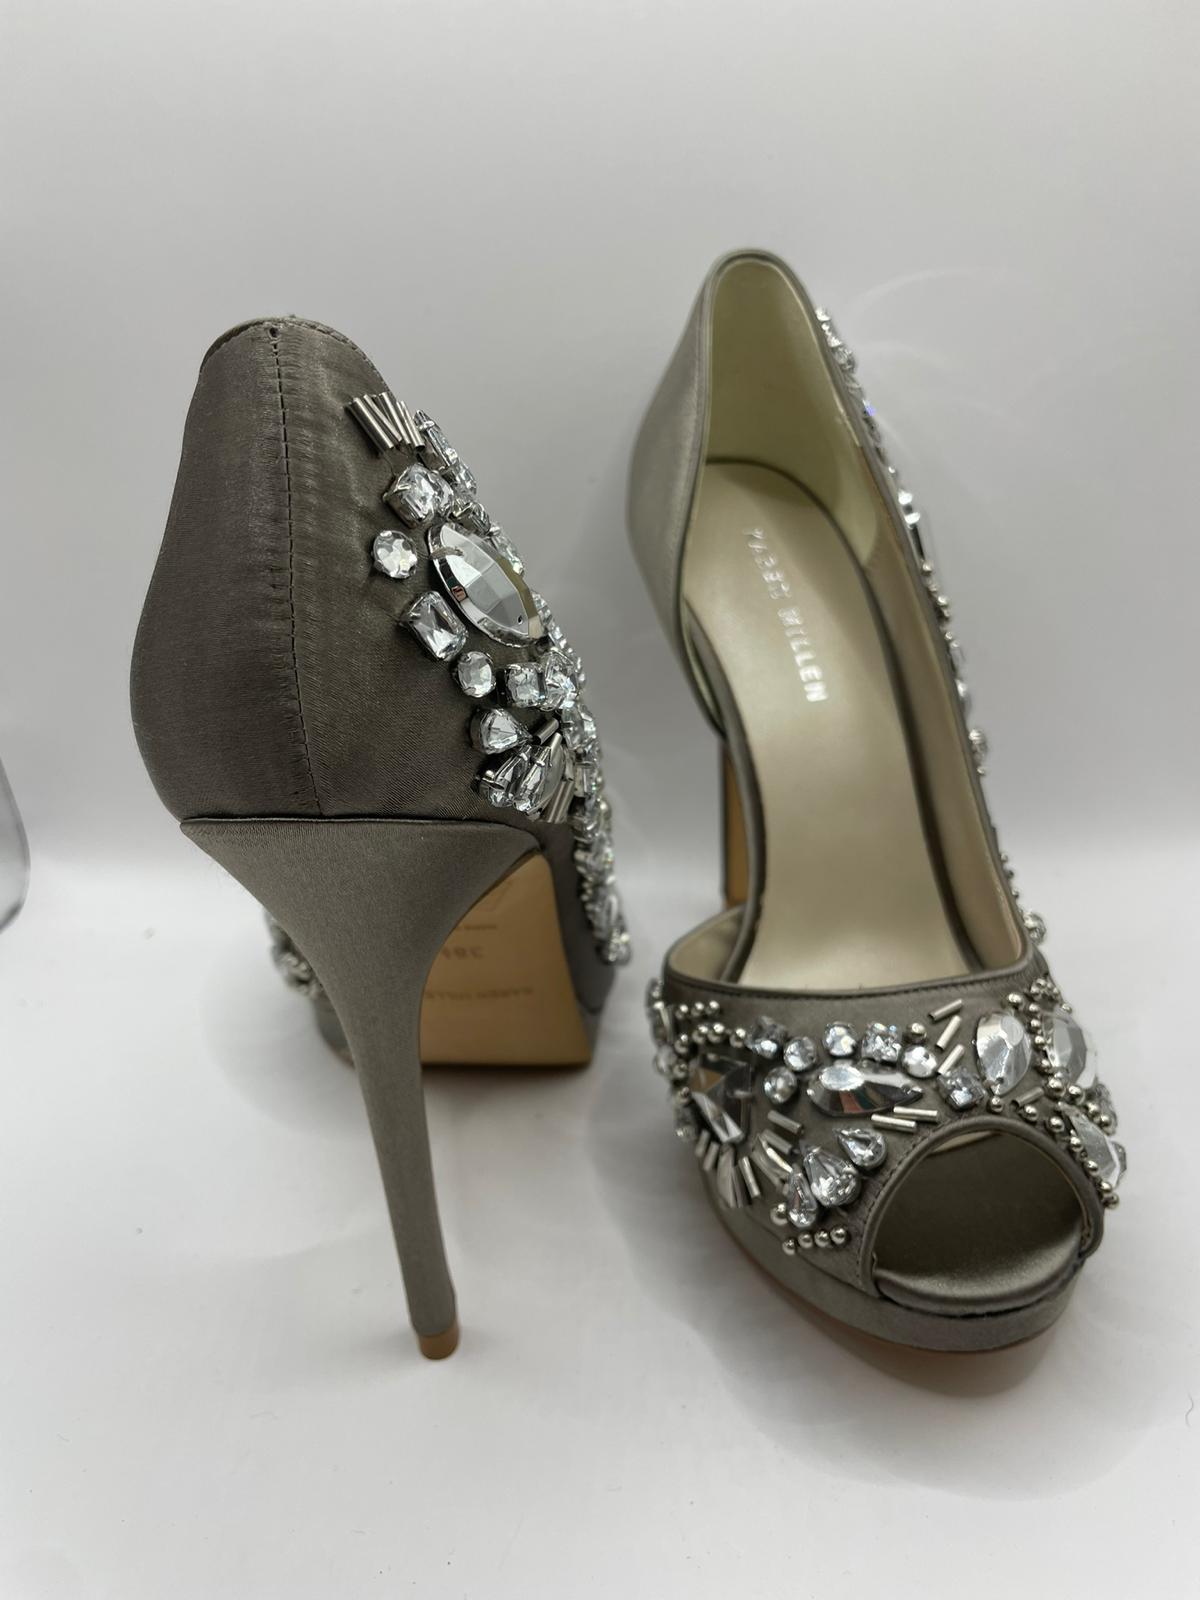 Karen Millen heels size 38.5